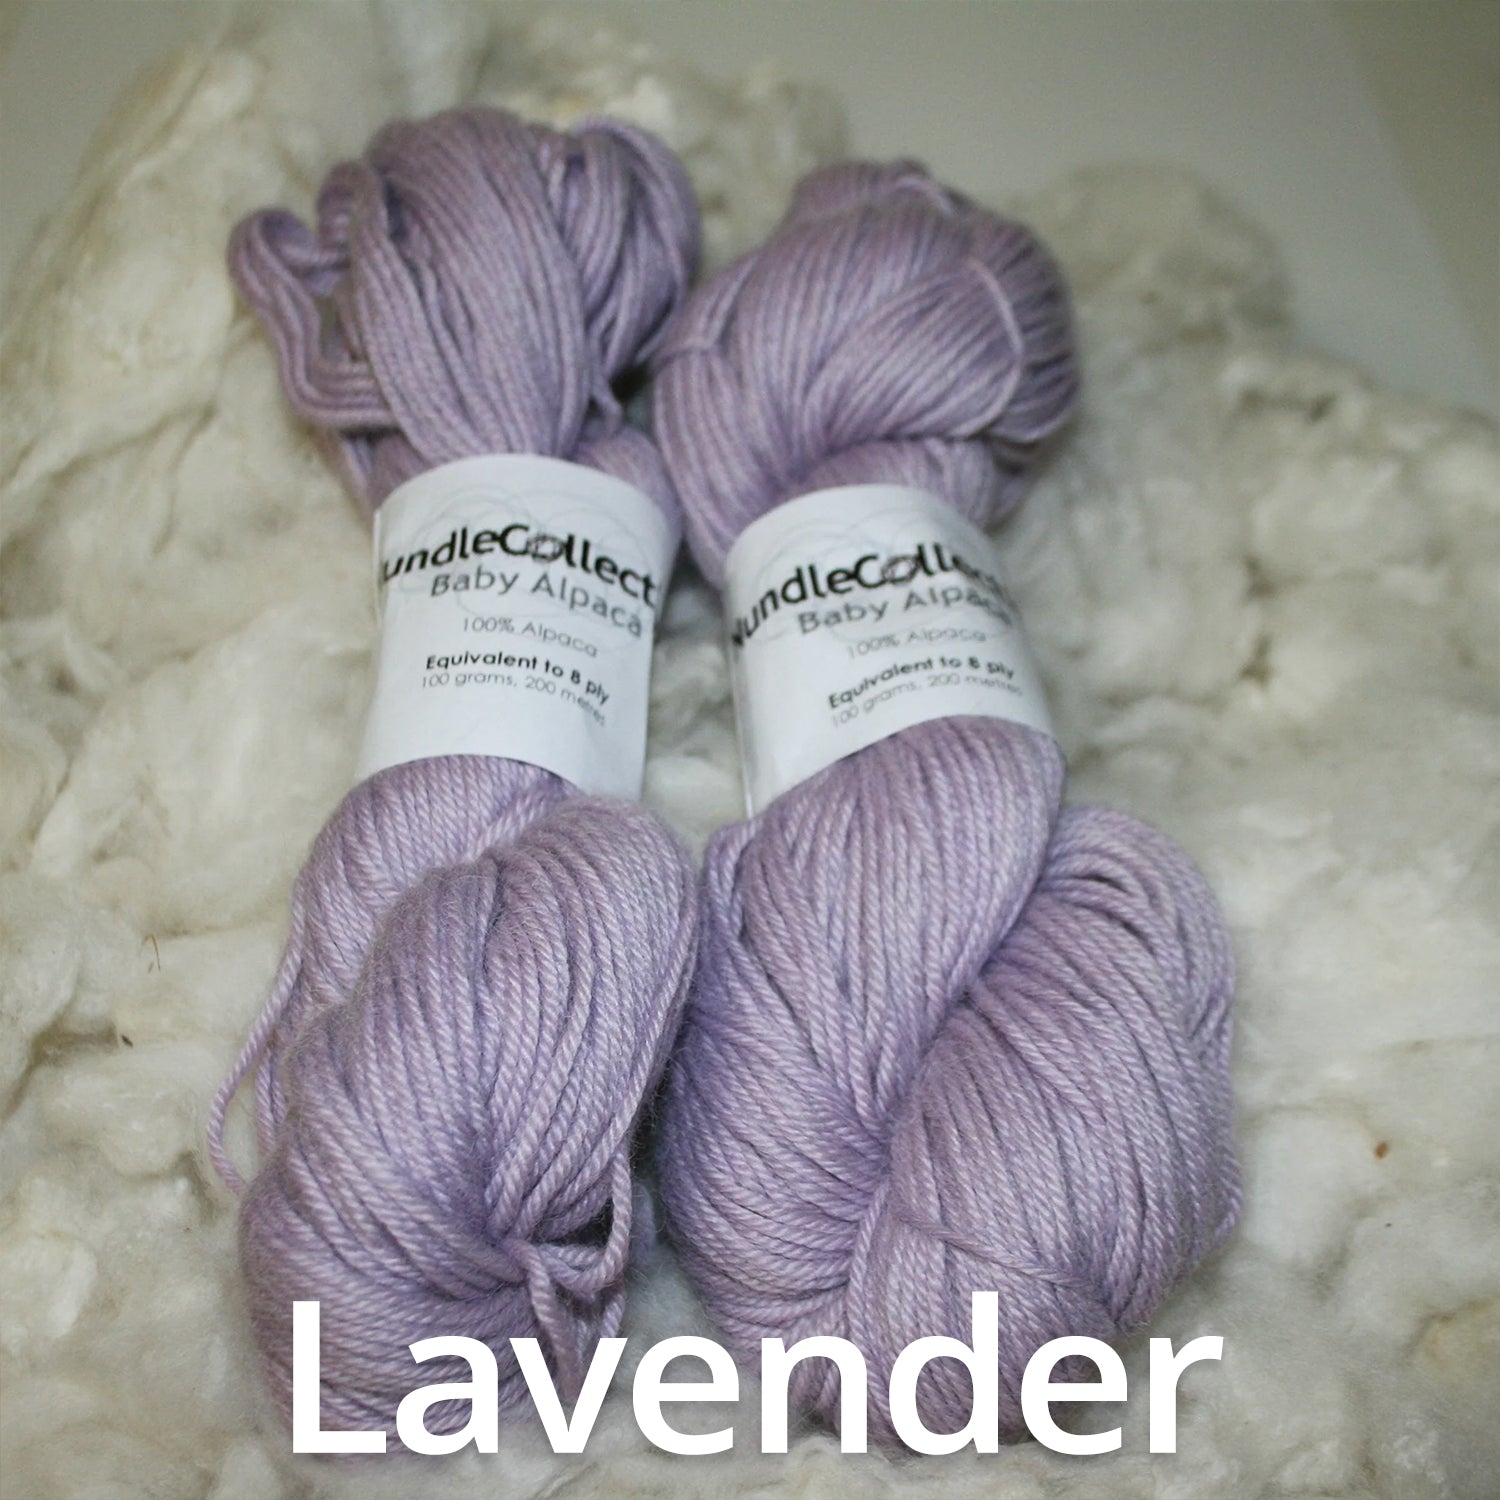 Baby Alpaca Lavender